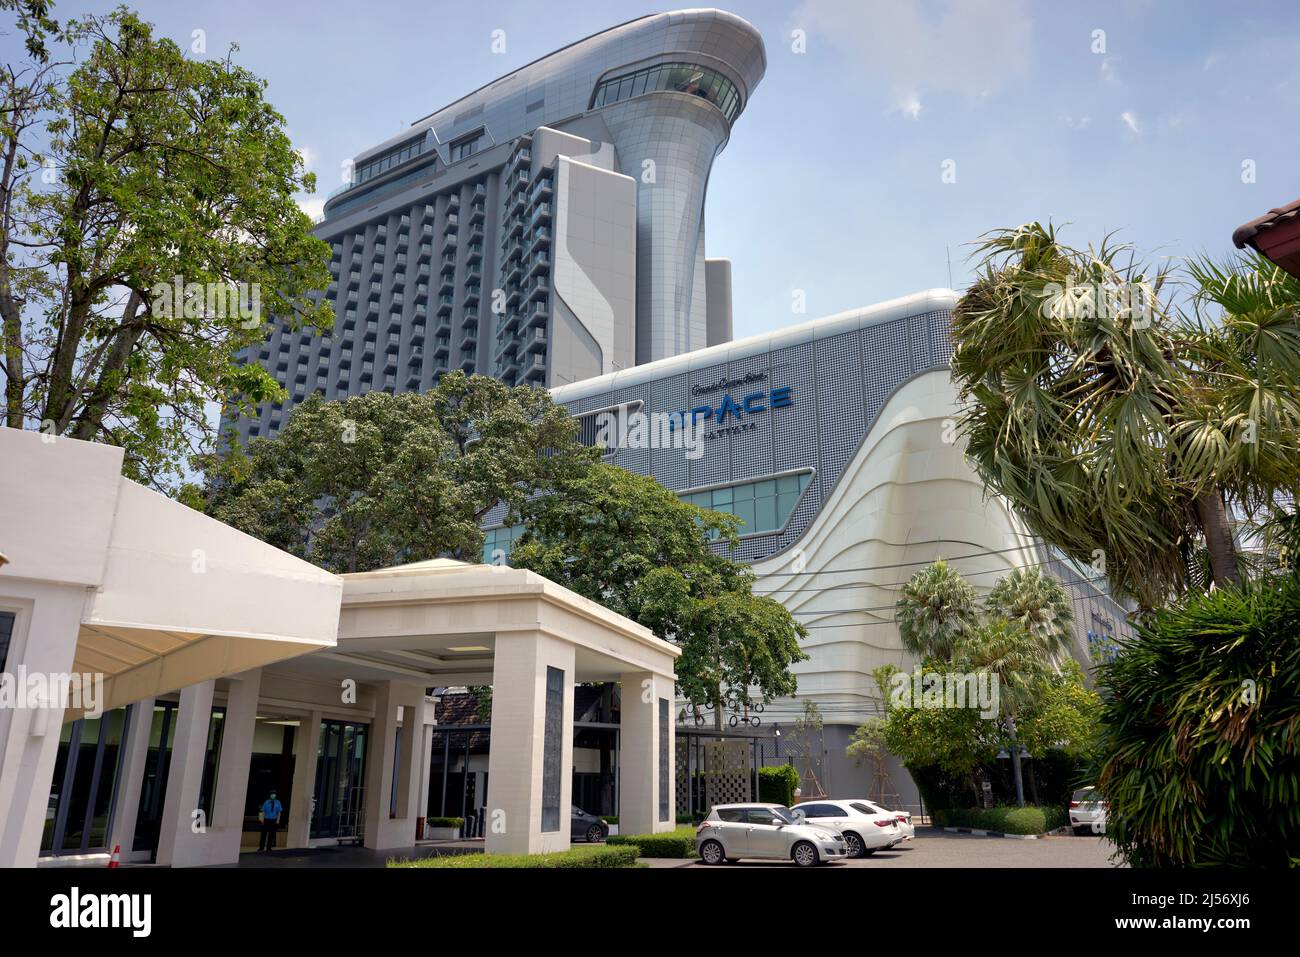 Hotel,Tailandia. Space Hotel Pattaya Tailandia. Grand Center Point es un moderno hotel de alta calidad y centro de convenciones que se eleva sobre el horizonte Foto de stock